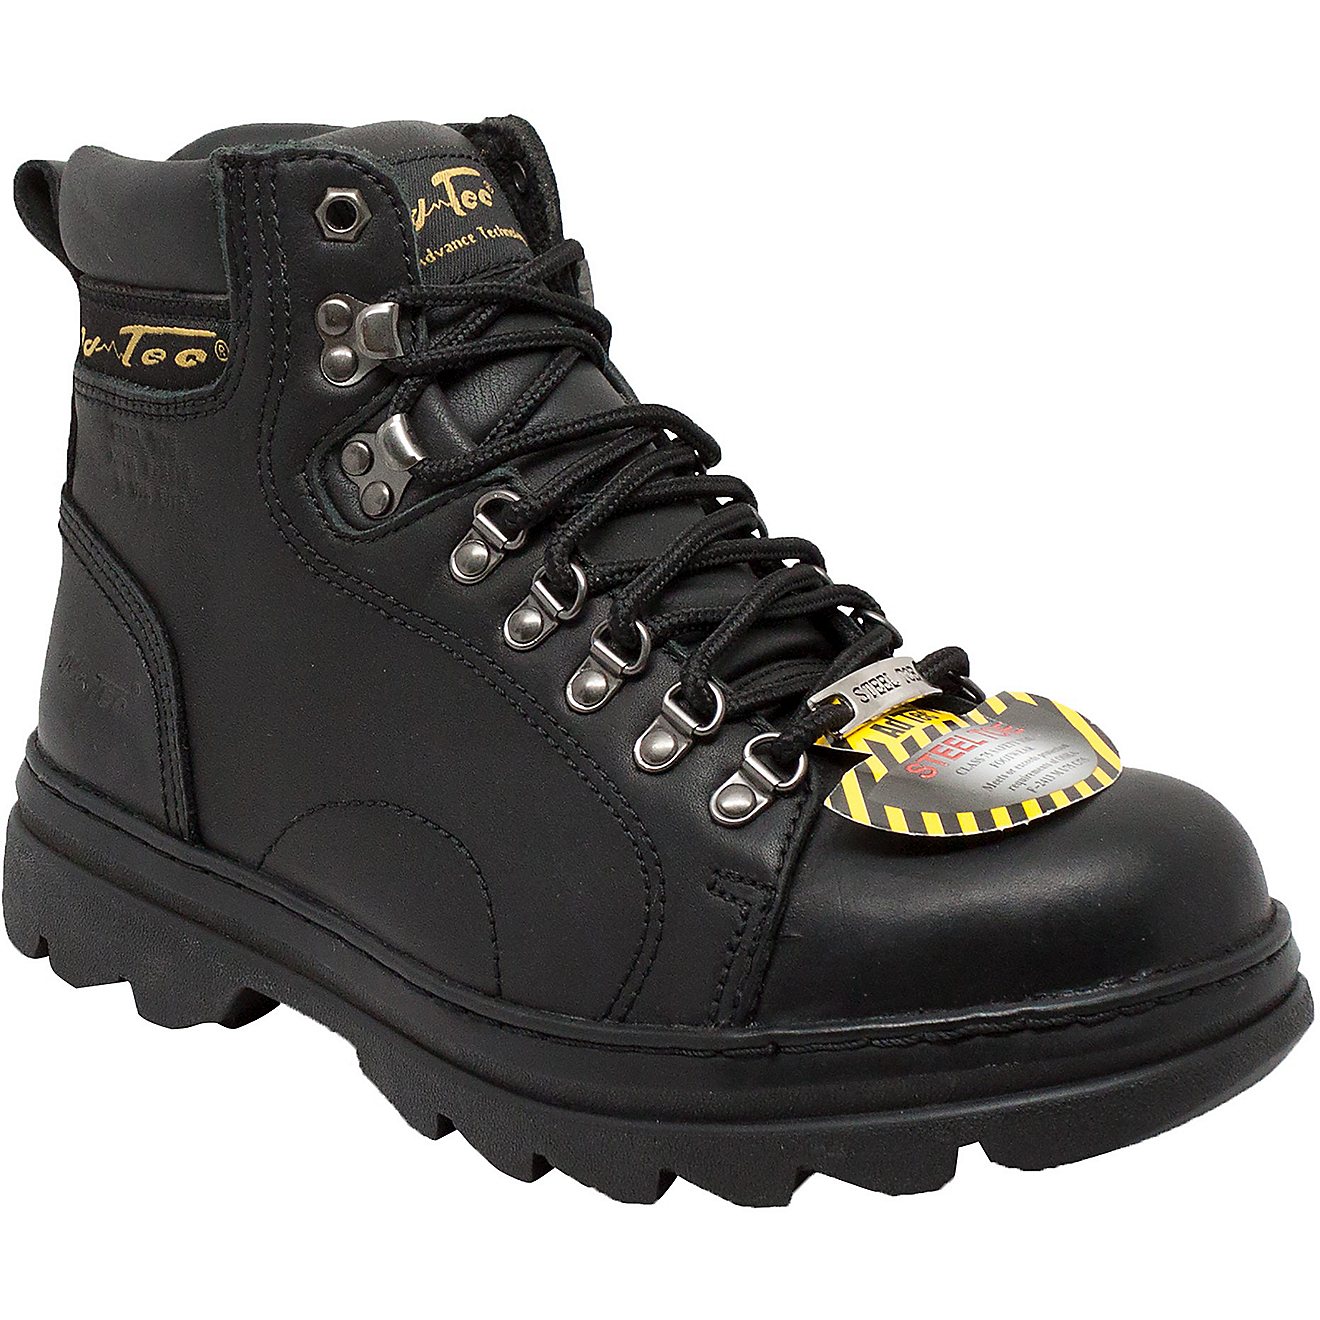 AdTec Men’s 6 in Steel Toe Hiker Boots                                                                                         - view number 2